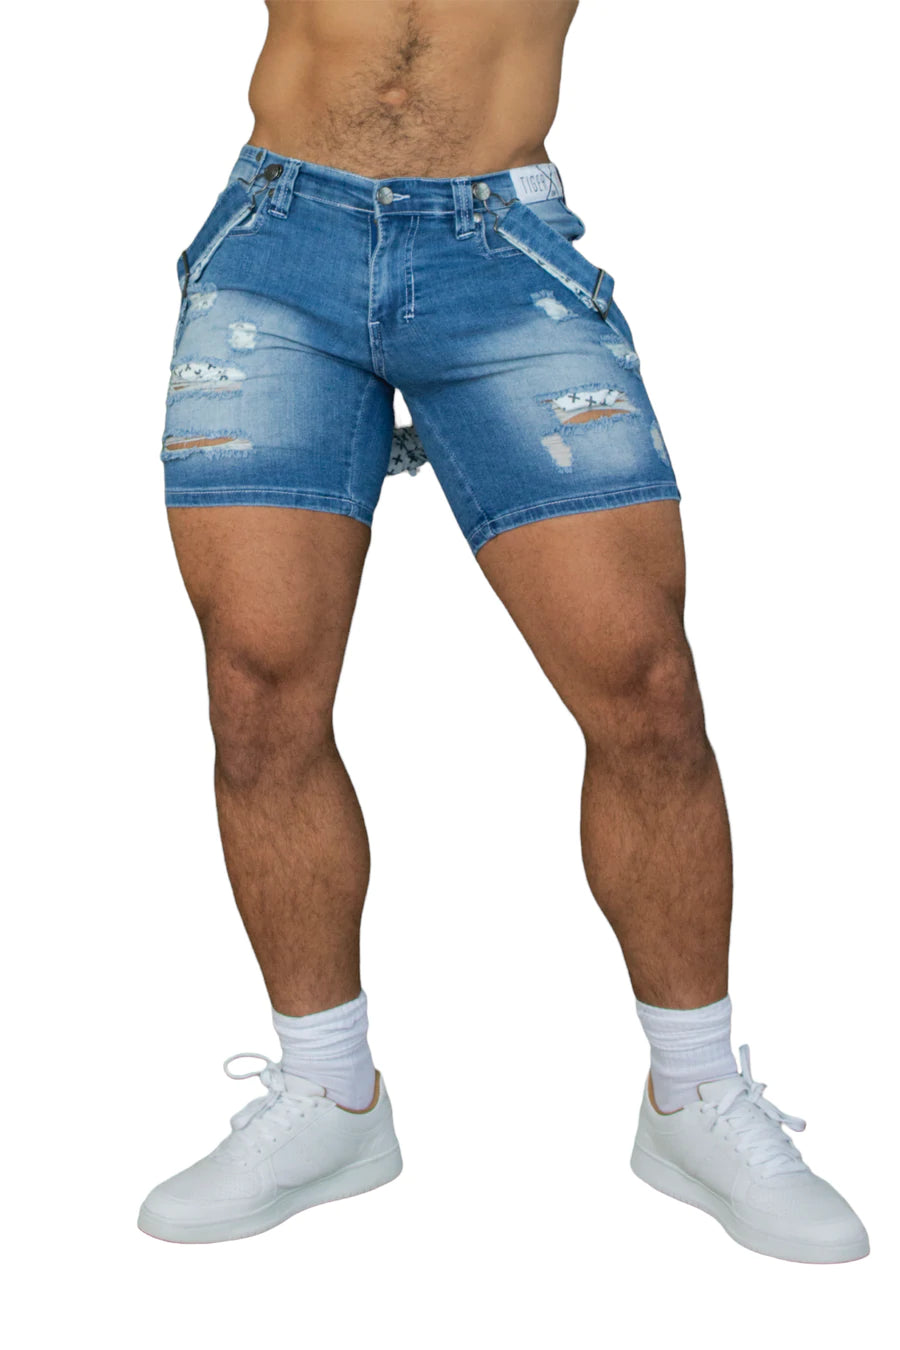 Homar Strap Shorts (Sky Blue)